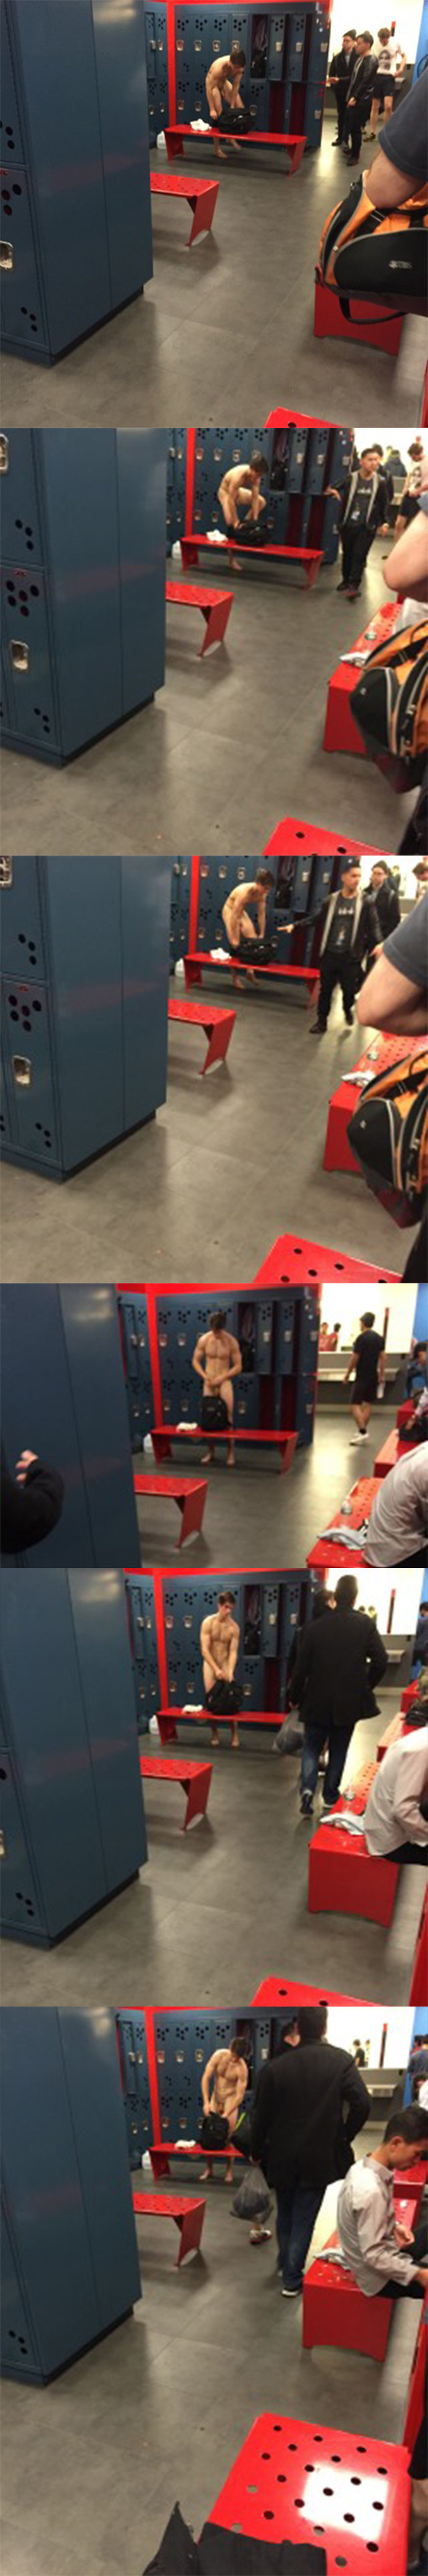 spycam naked guy in locker room